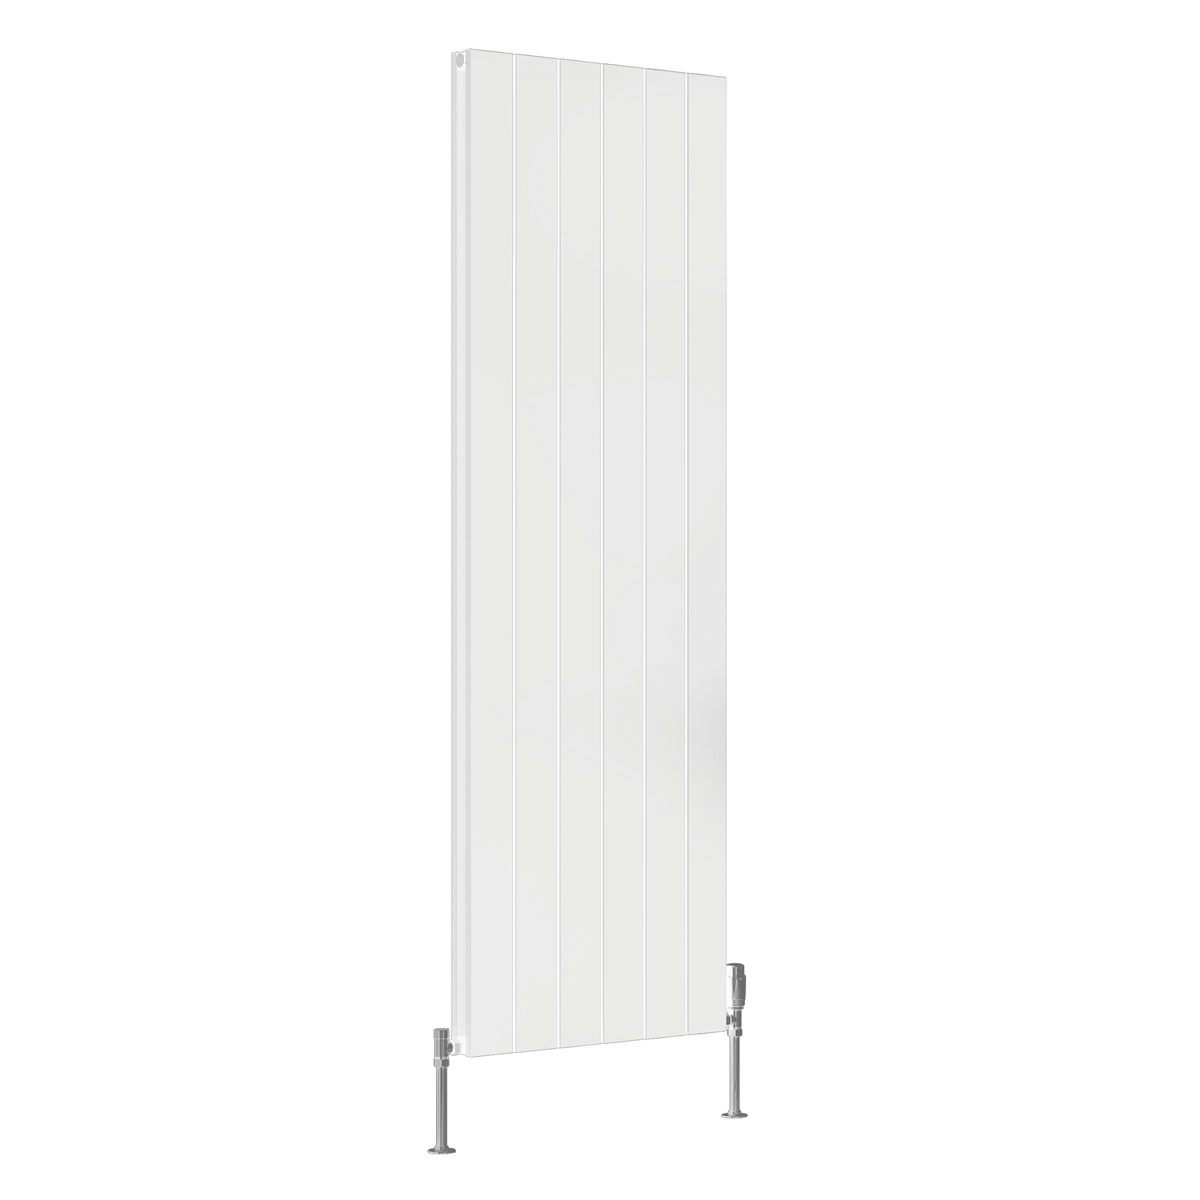 Reina Casina white double vertical aluminium designer radiator 1800 x 565